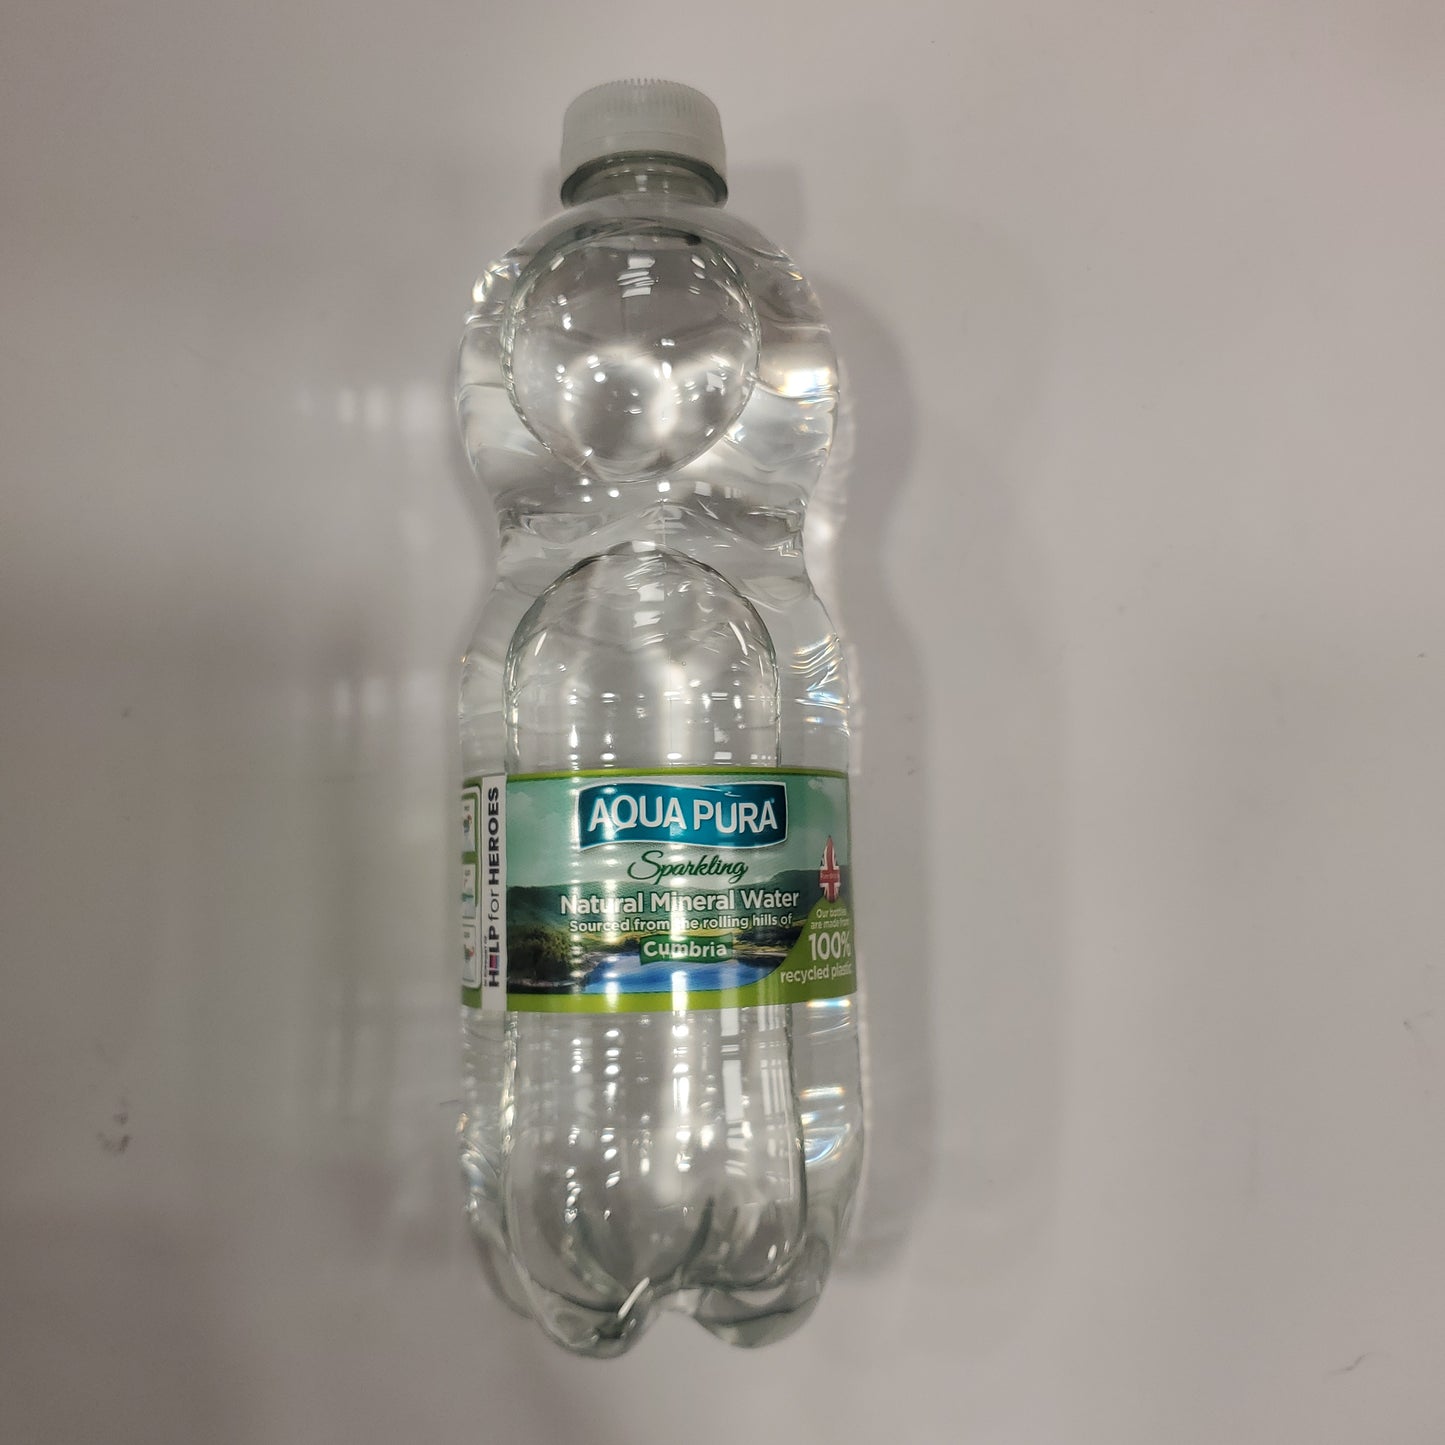 Aqua Pura Natural Mineral Water (Sparkling) 500ml 有氣水